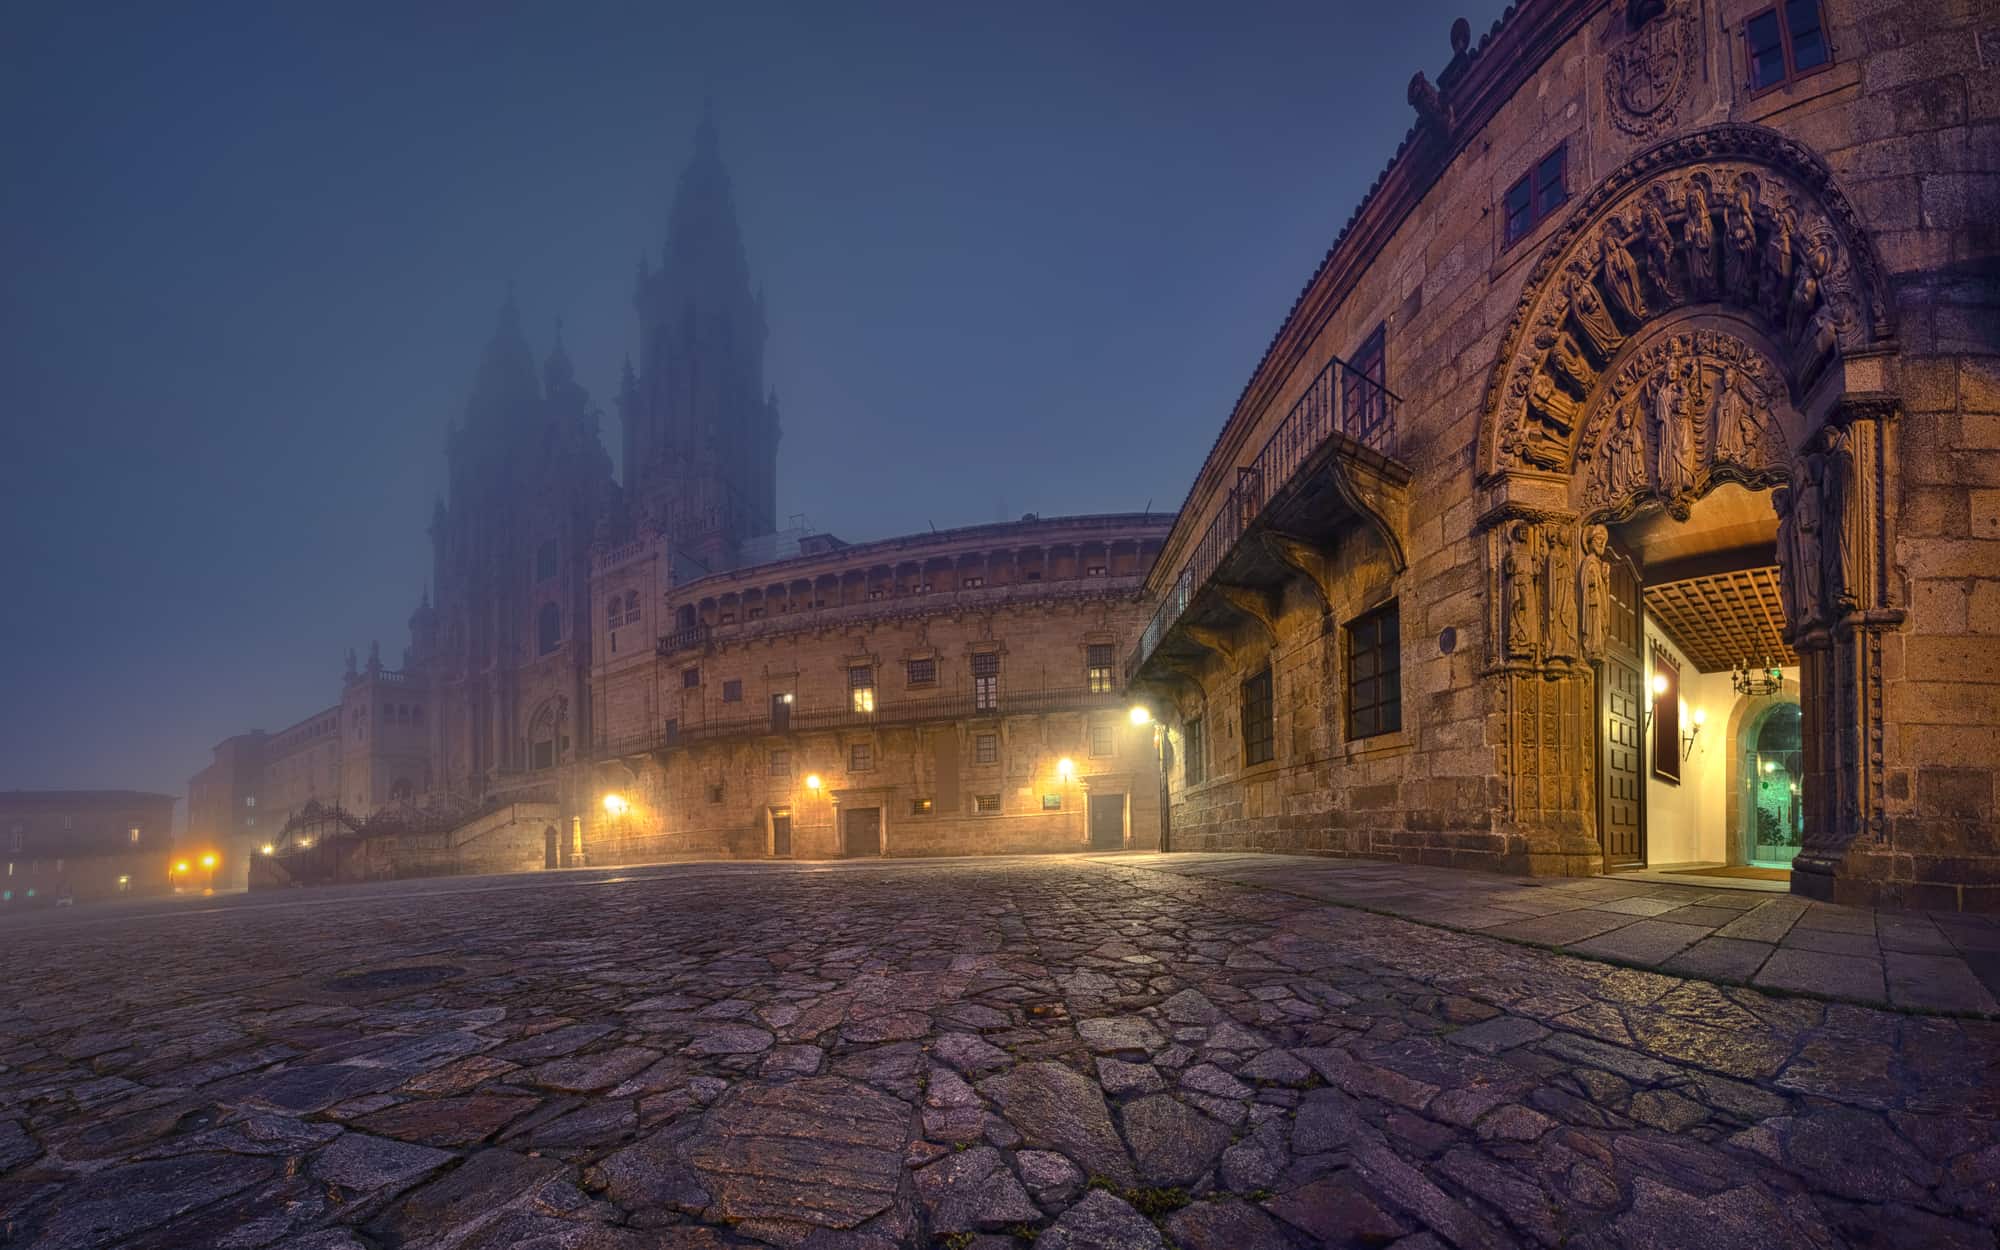 Santiago de Compostela, Spain. View of Praza do Obradoiro